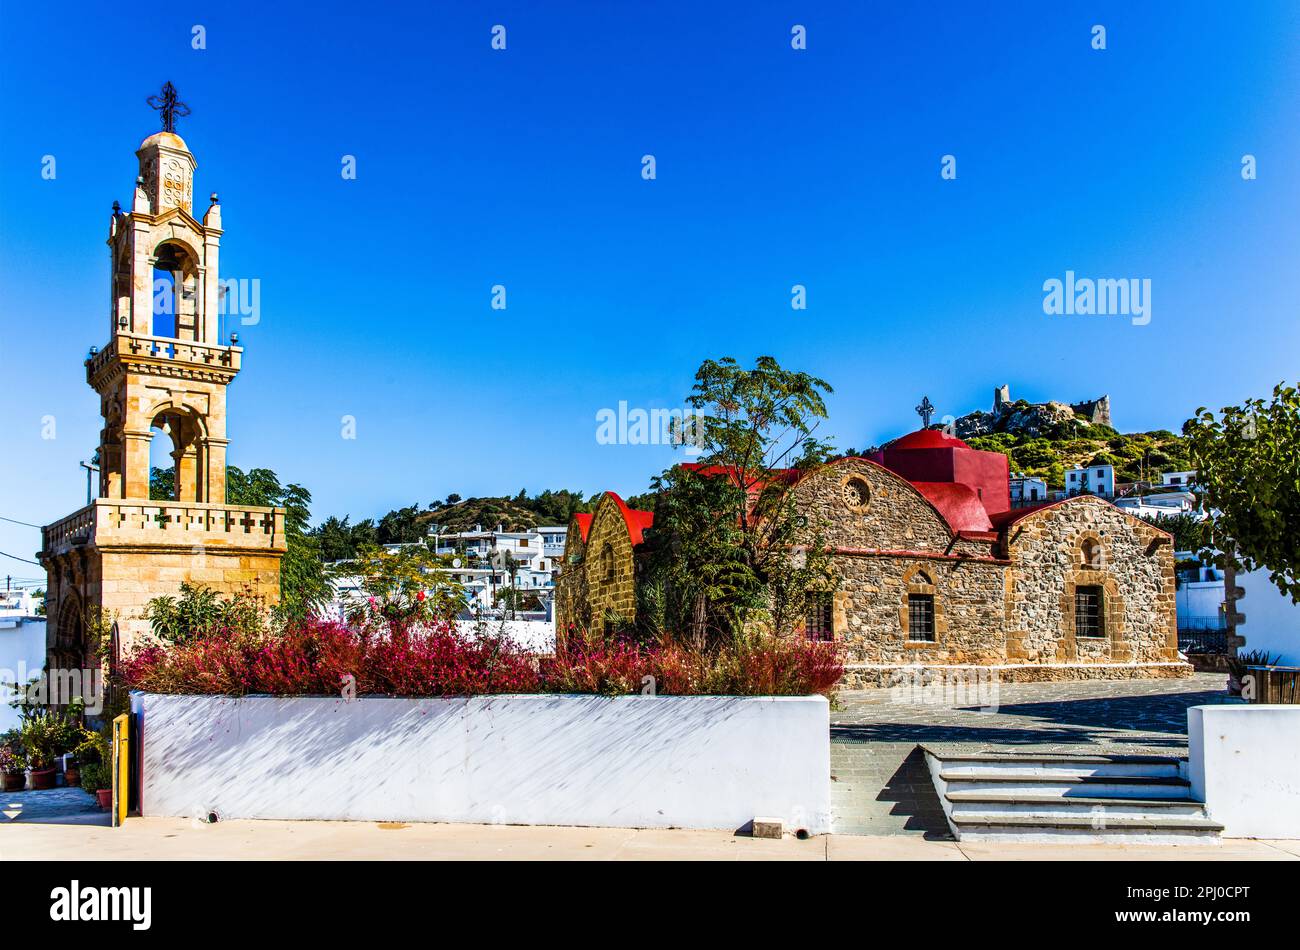 Croce-cupola chiesa di Kimissis tis Theotokou, Asklipio, una delle più antiche chiese di Rodi dal 13th ° secolo, Grecia Foto Stock